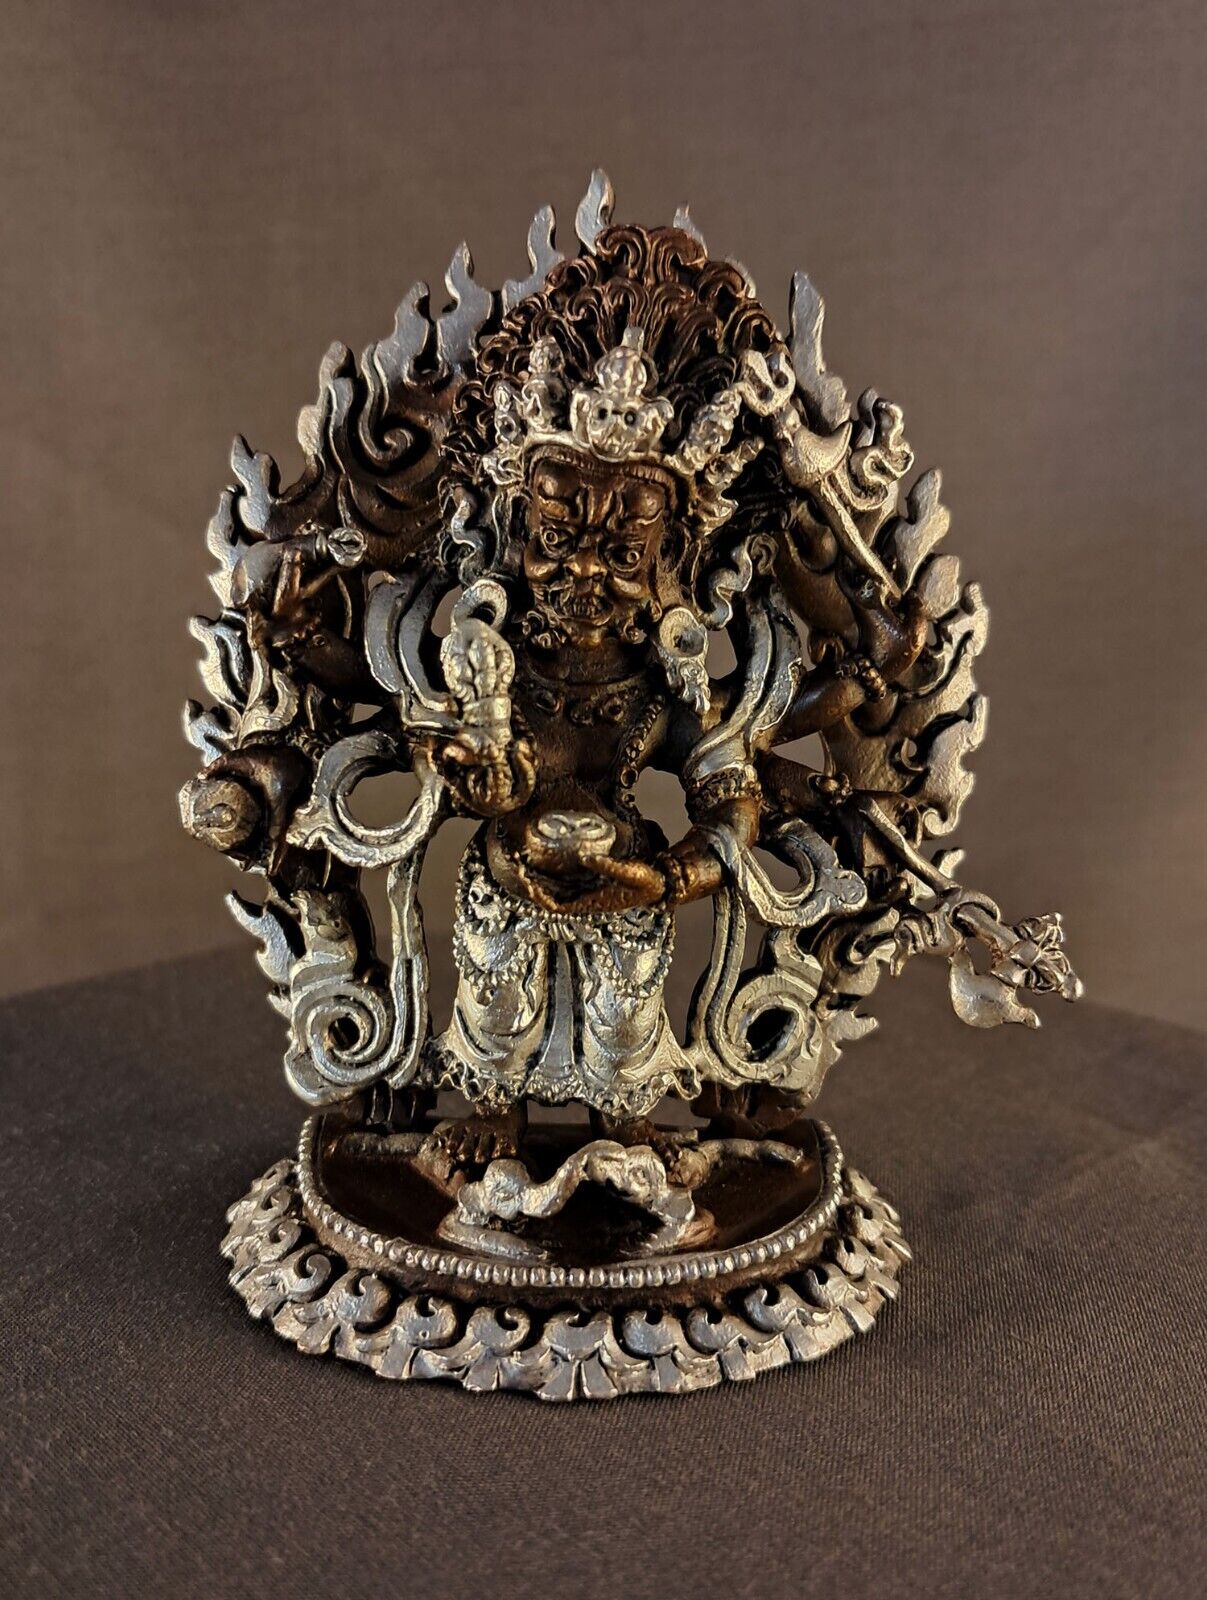 Six hand White Mahakala Bhairav Guru Dragpo Padma Sharvari Copper Statue Figure